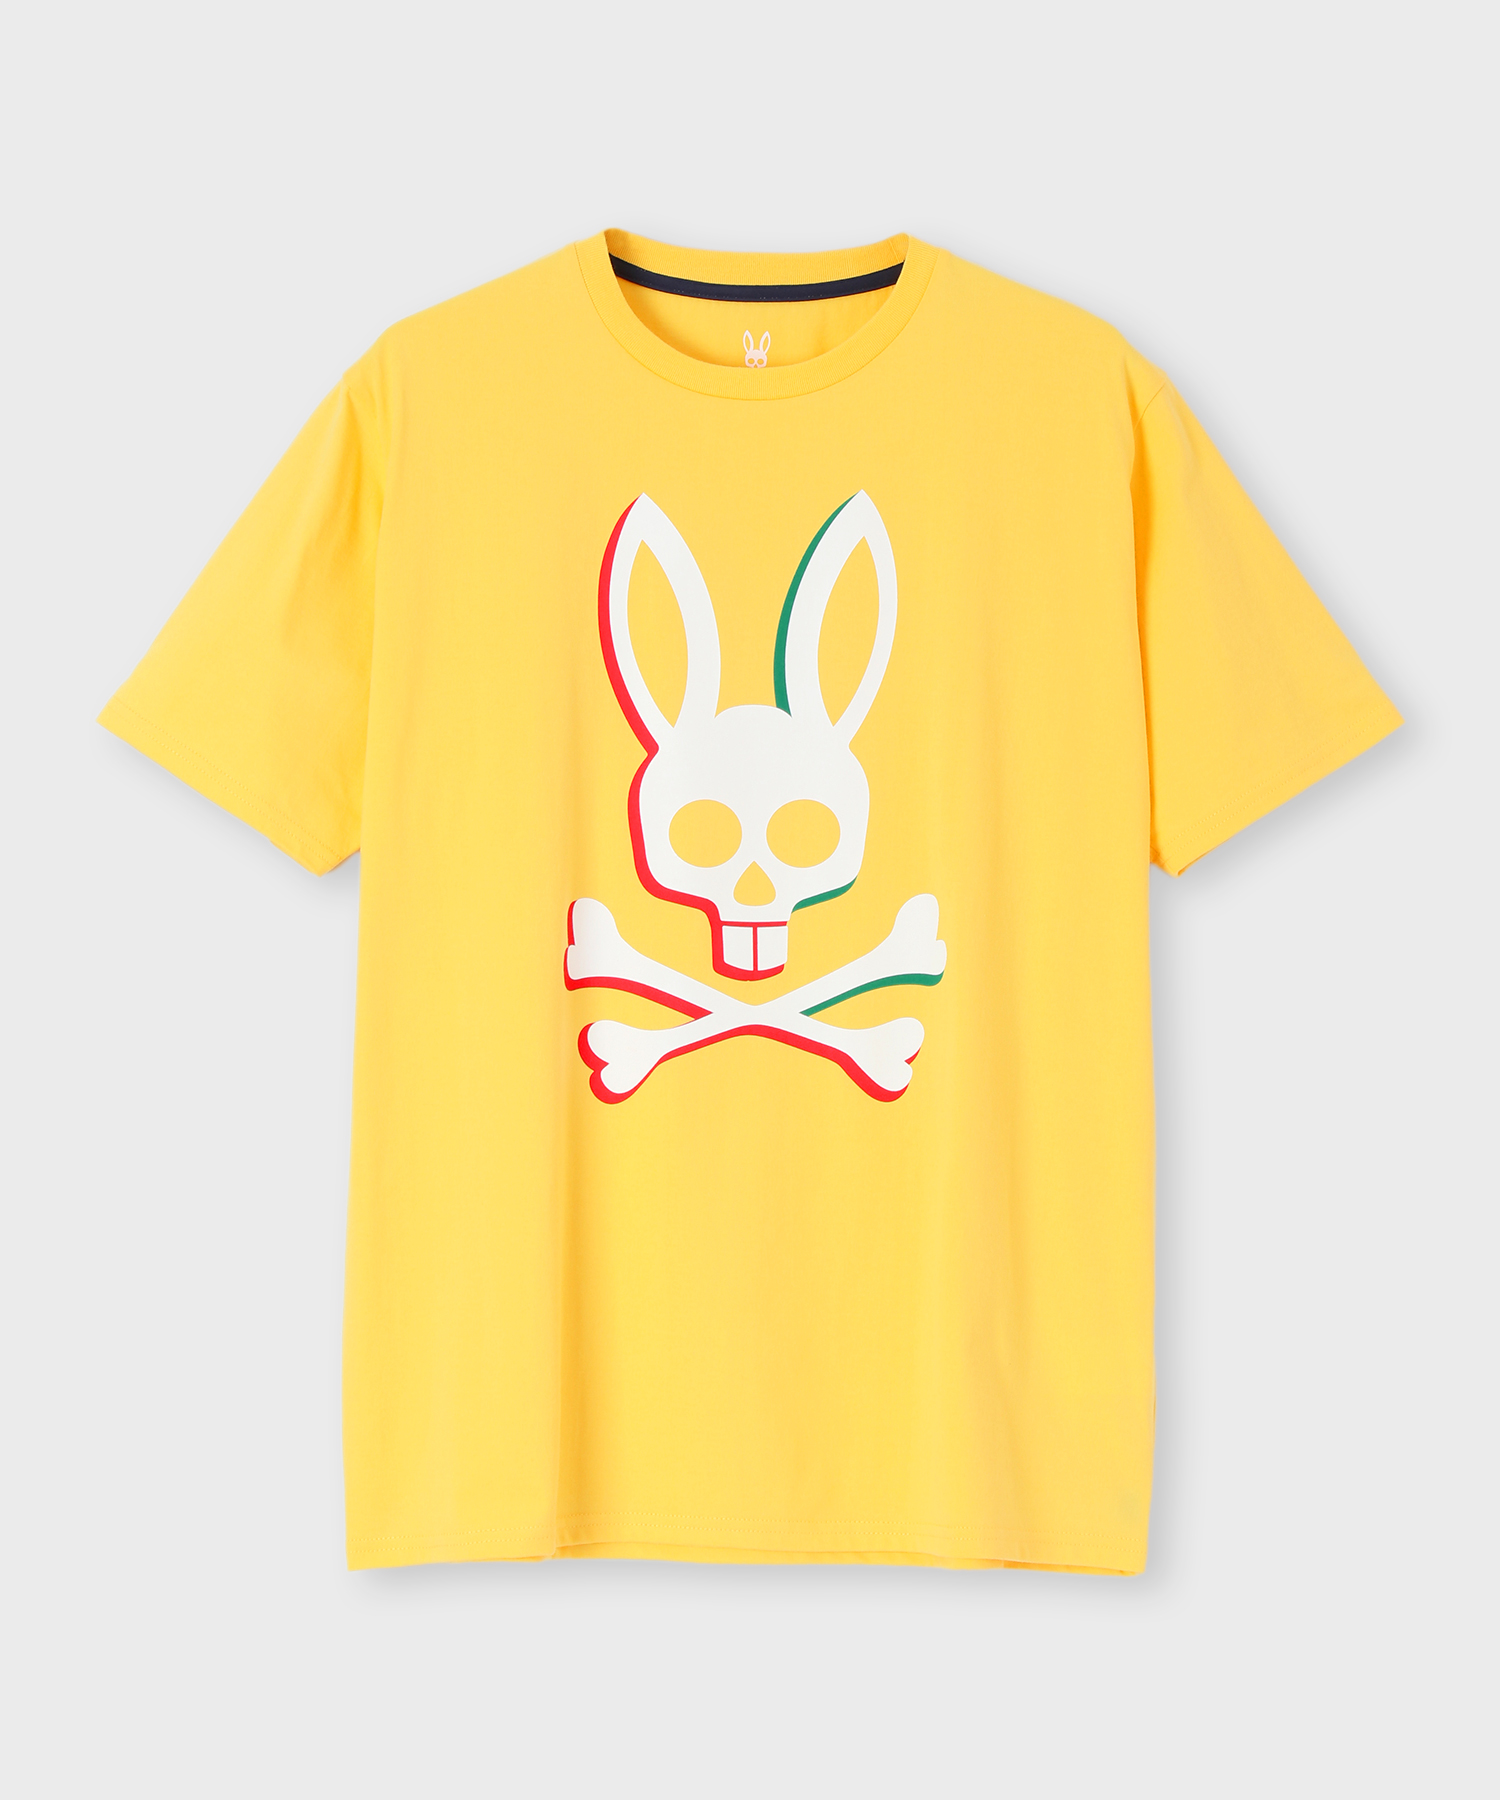 Psycho Bunny｜サイコバニー 公式ブランドサイト – Psycho Bunny JAPAN